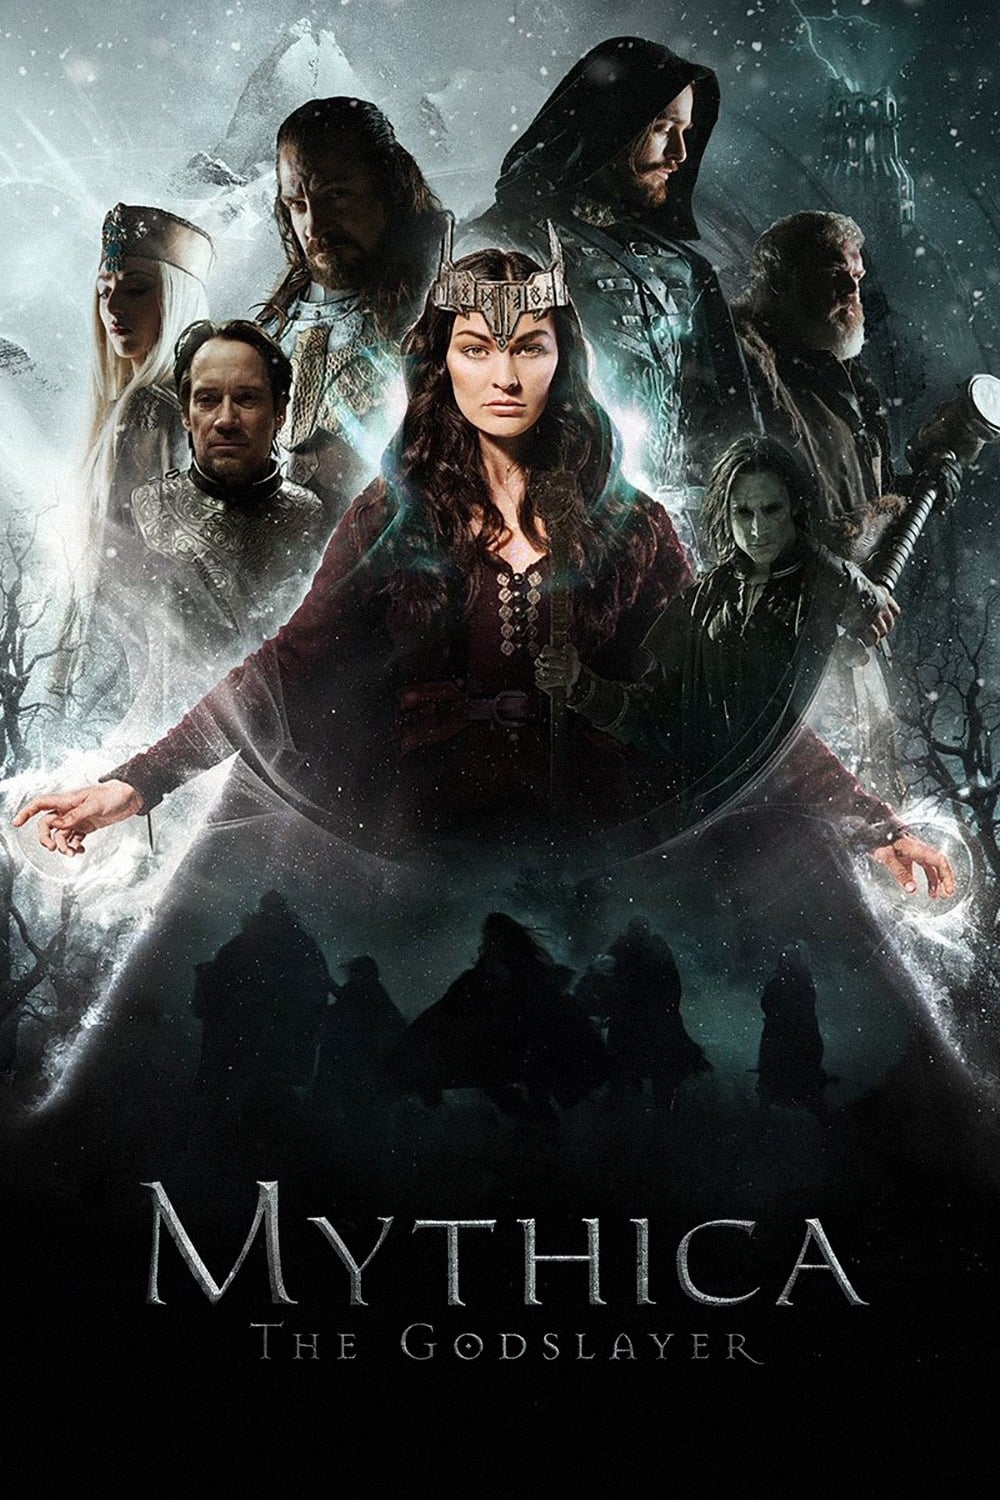 Mythica : Le Crépuscule des Dieux